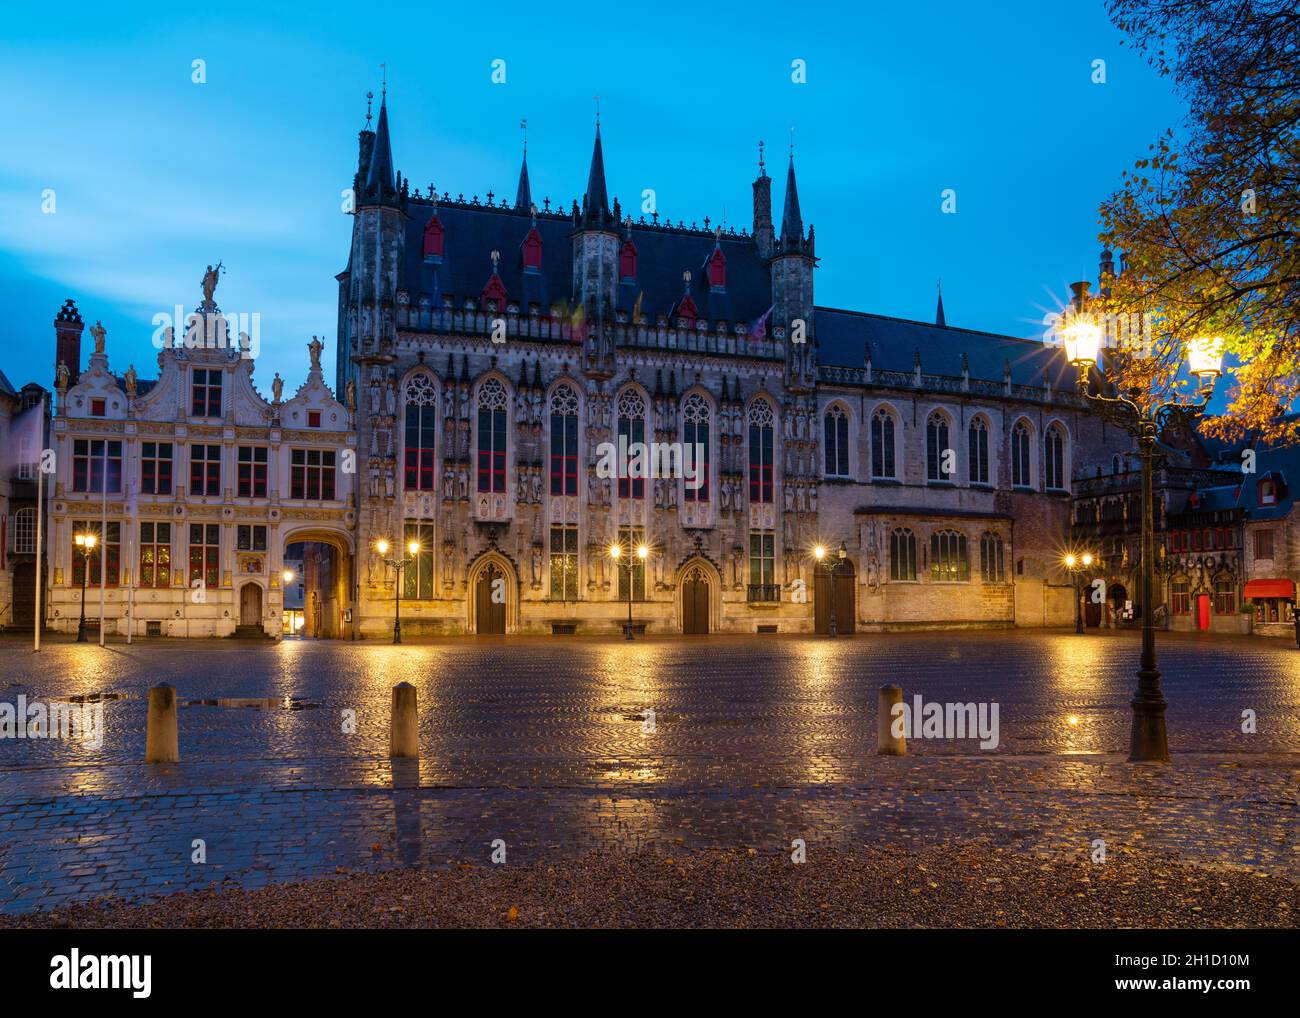 Bruges, BELGIQUE - 2 NOVEMBRE 2019 : image panoramique de la mairie historique à la veille, bâtiments historiques de Bruges le 2 novembre 2019 en Belgique Banque D'Images